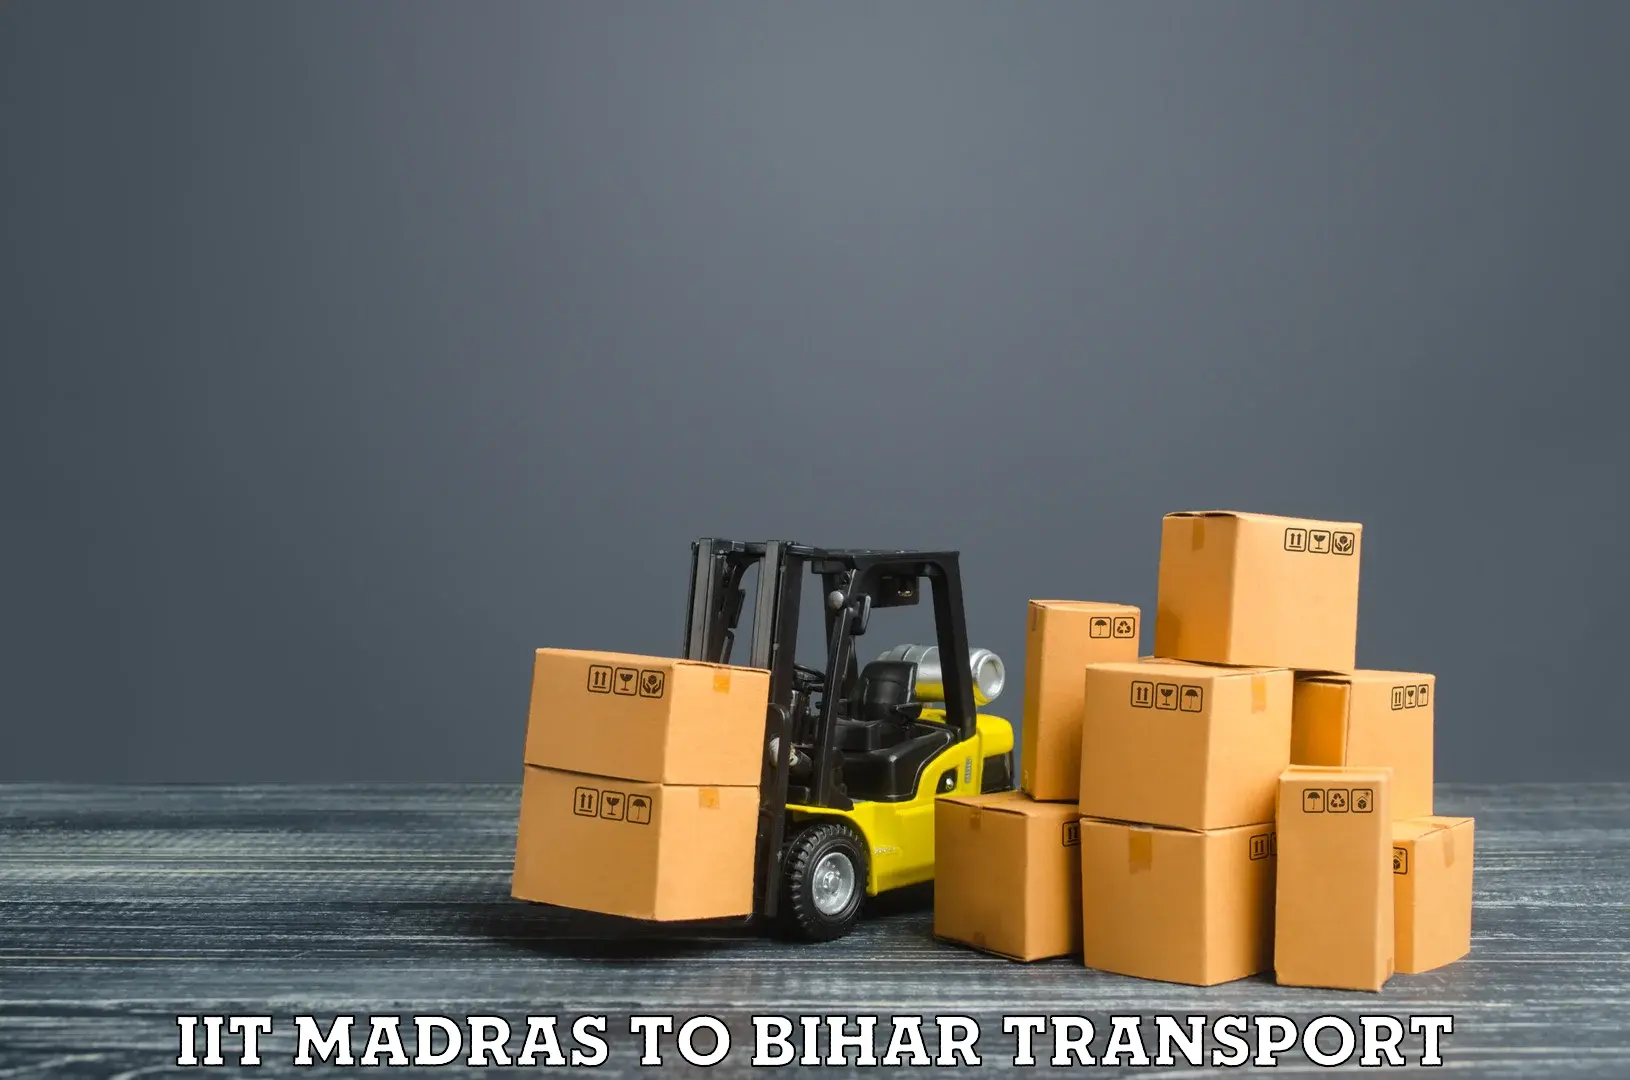 Bike transport service IIT Madras to Hilsa Nalanda